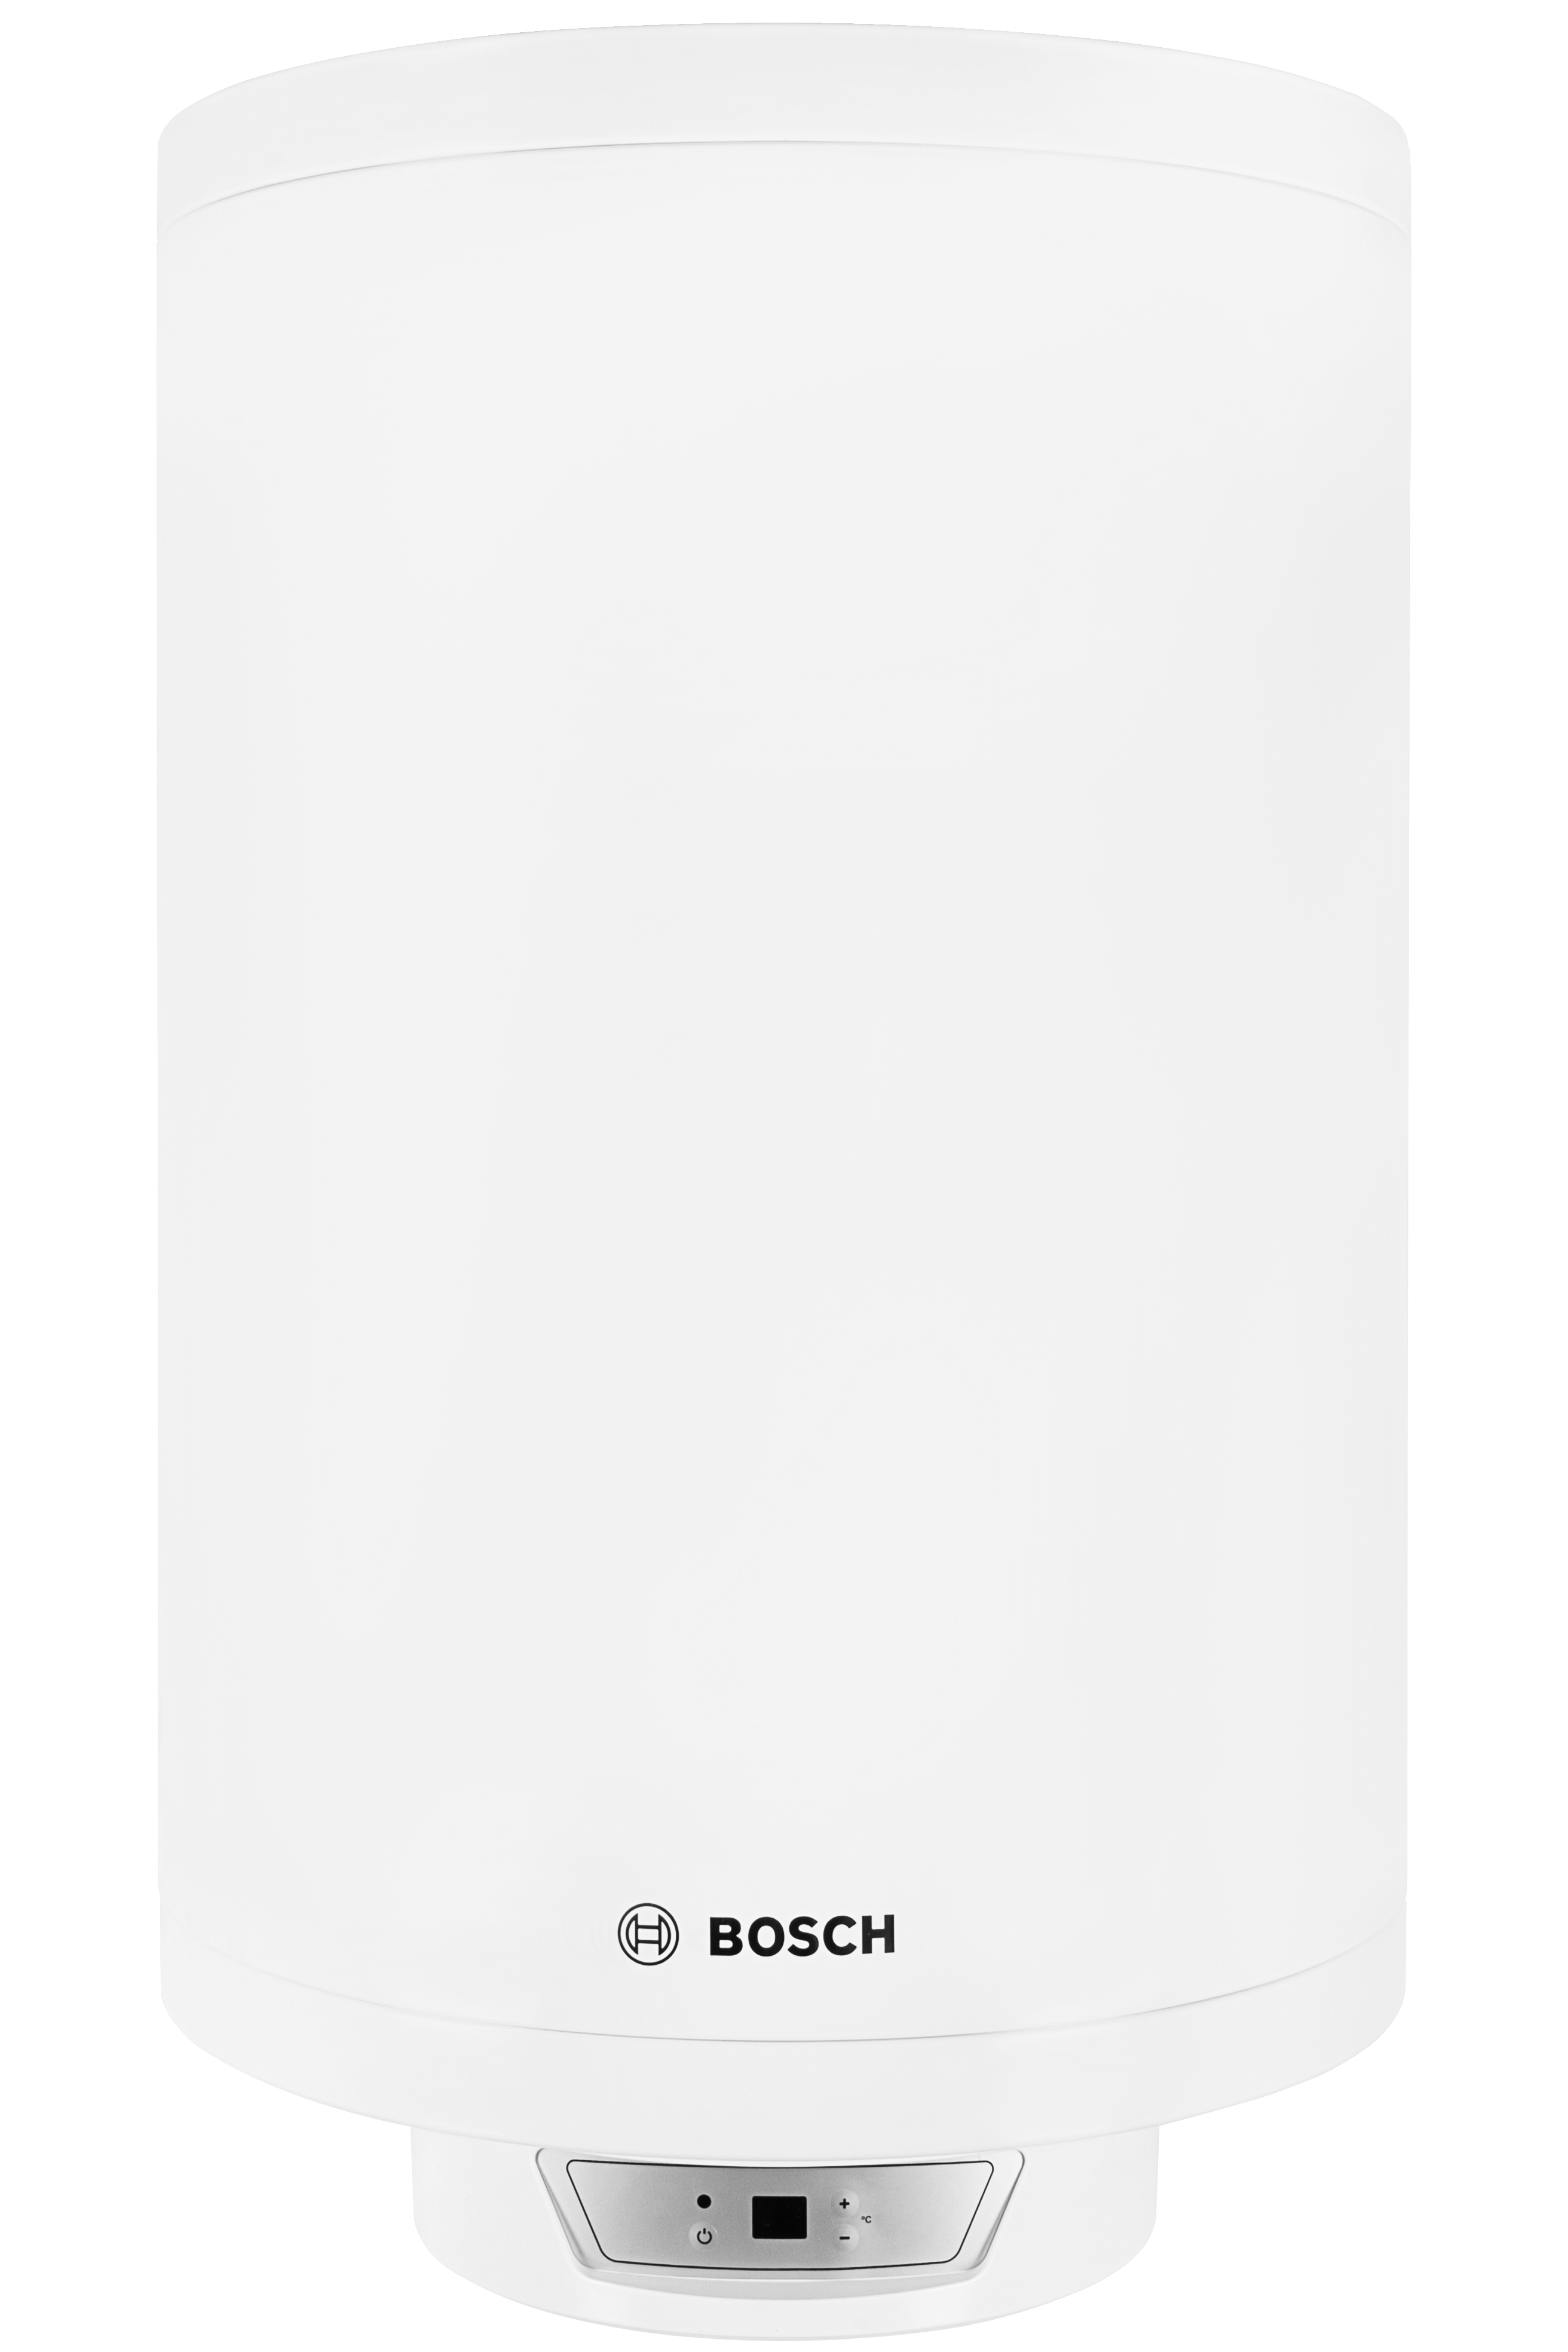 Отзывы бойлер bosch накопительный Bosch Tronic 8000T ES 080-5 2000W BO H1X-EDWRB (7736503147) в Украине